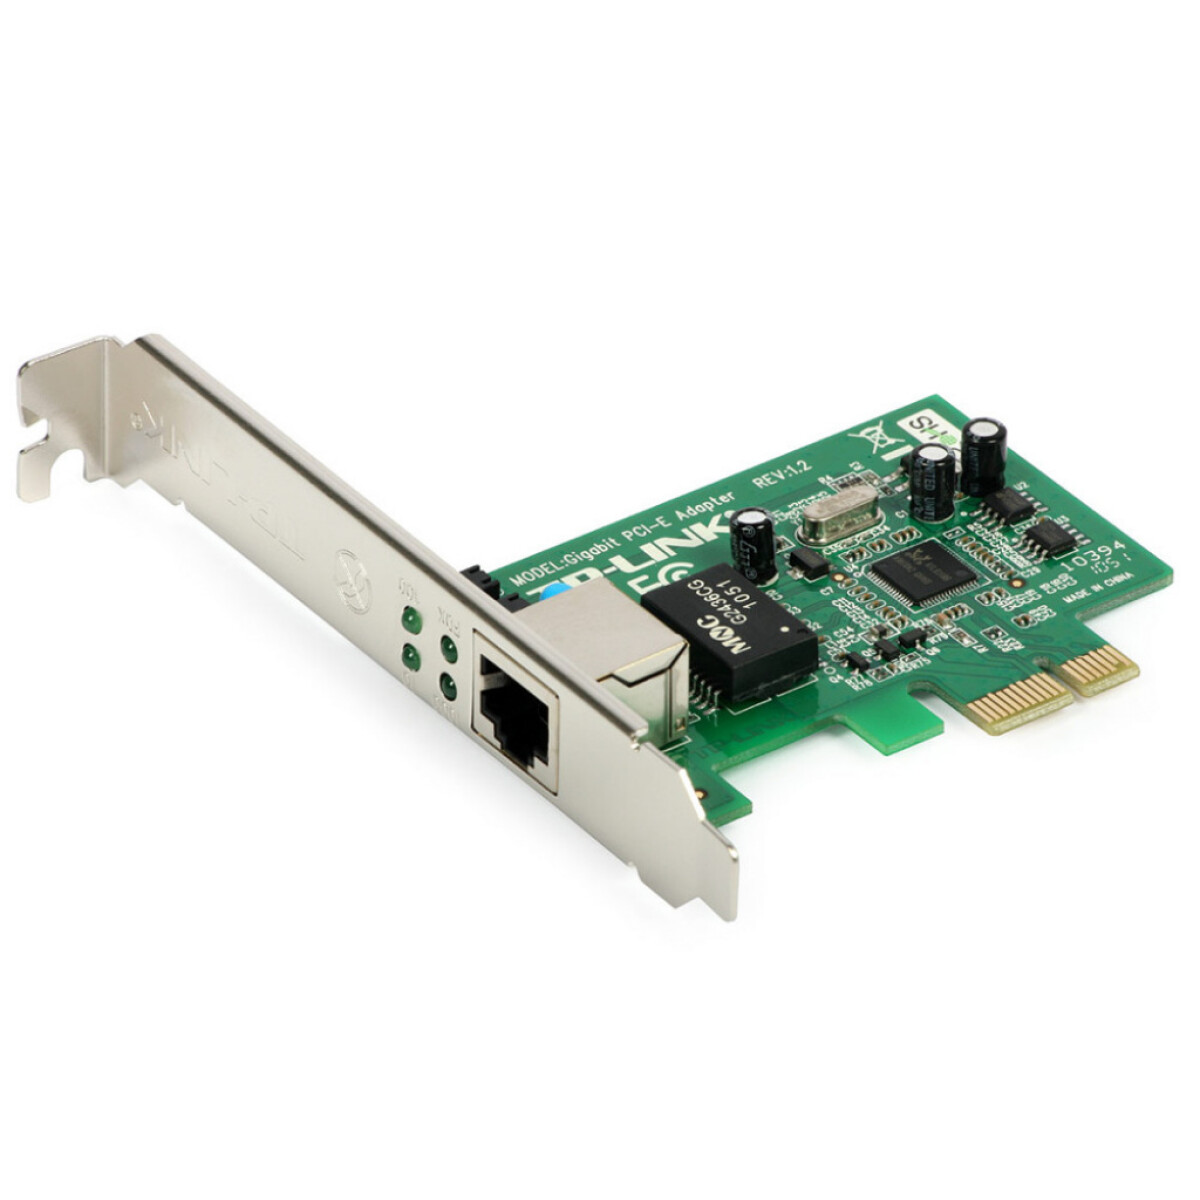 Tarj PCI-E Red 10/100/1000 Mb TG-3468 TP-LINK - 3588 